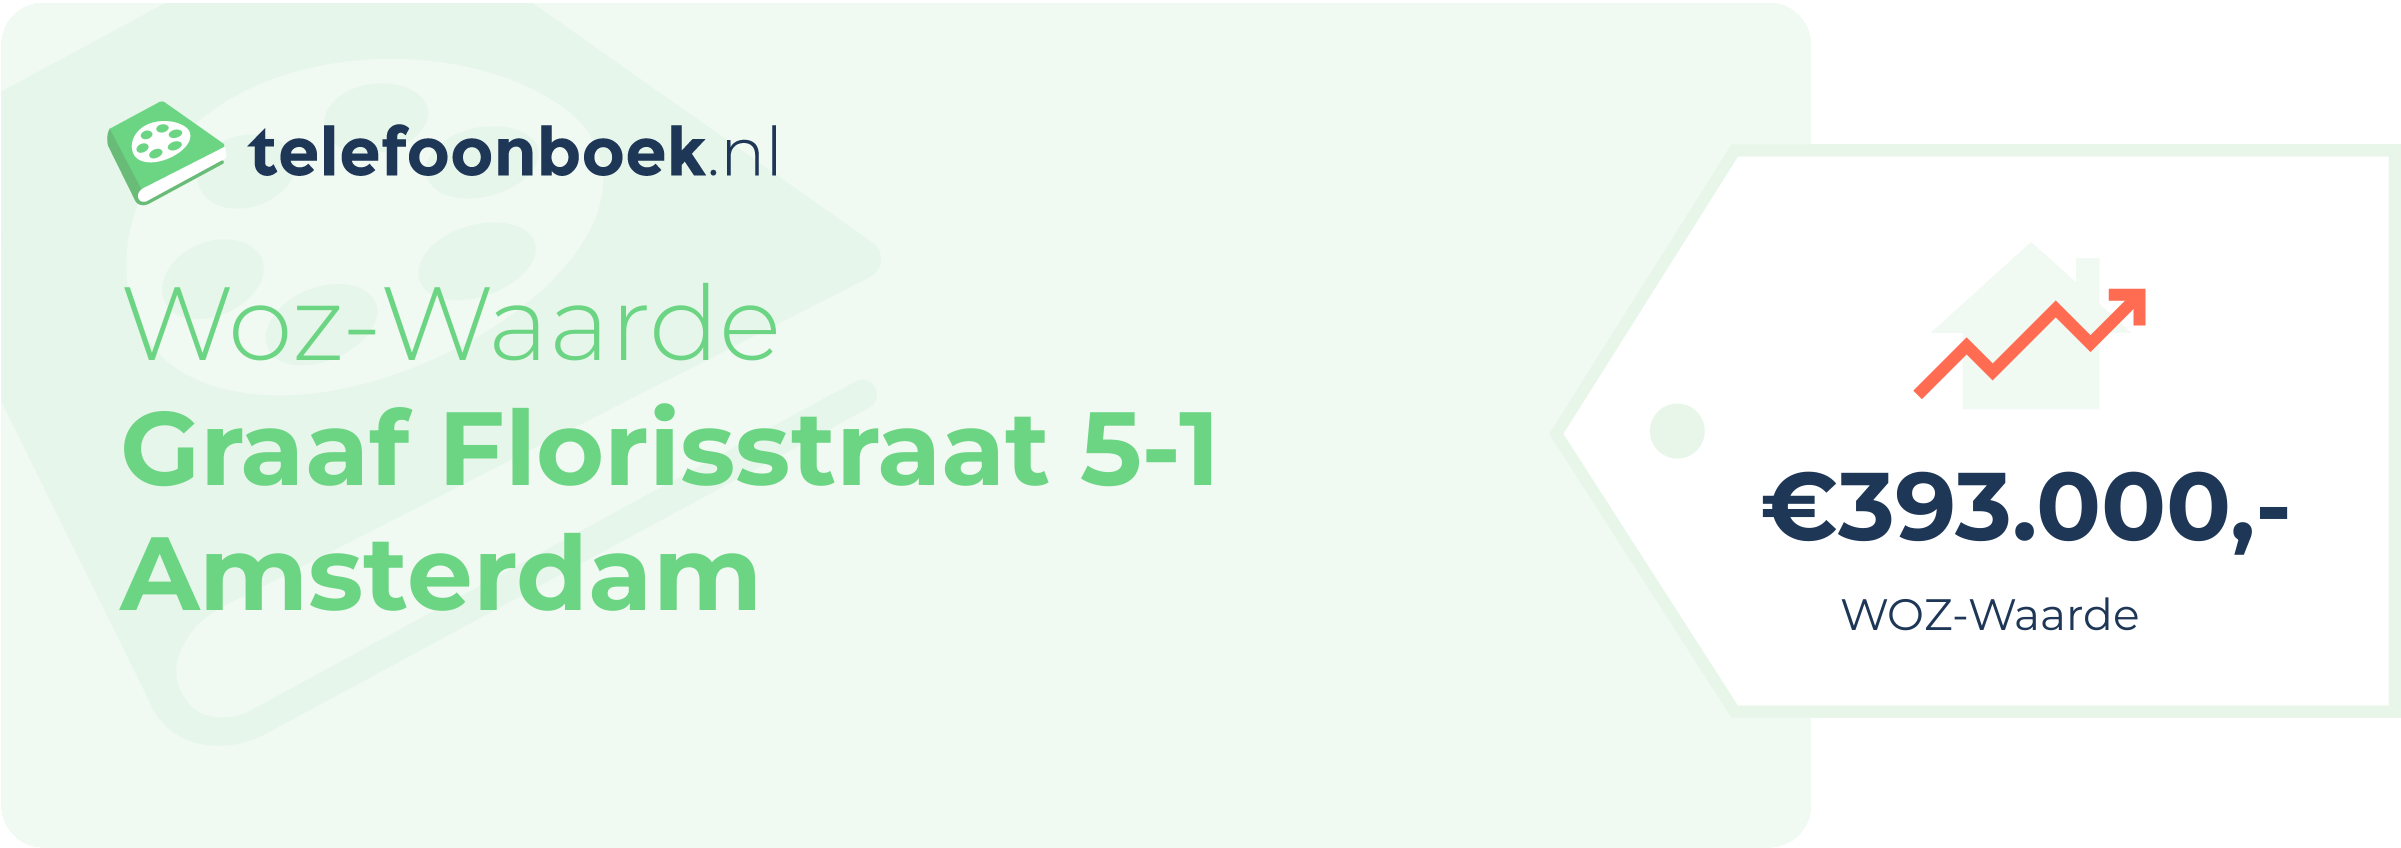 WOZ-waarde Graaf Florisstraat 5-1 Amsterdam